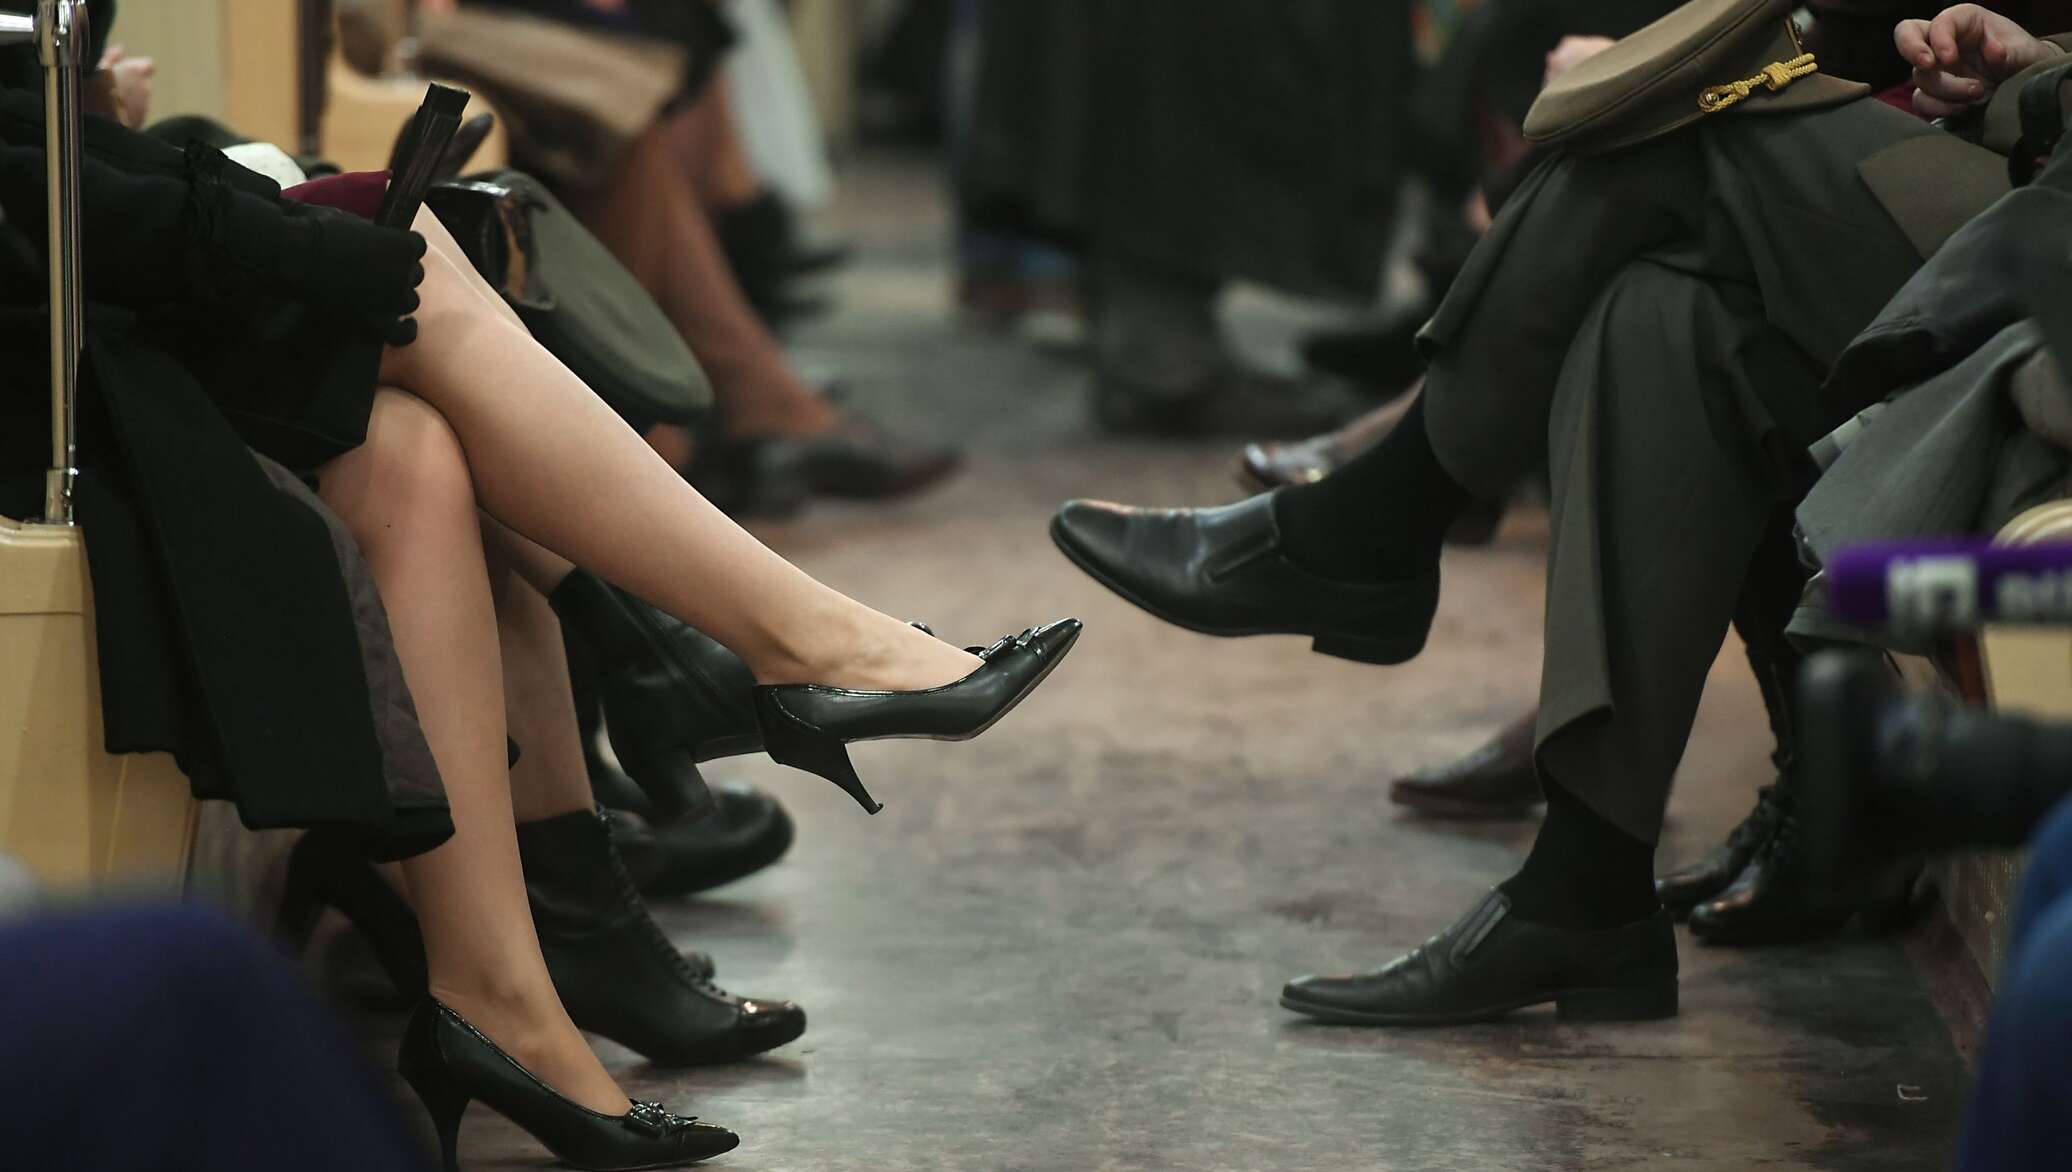 Почему закидывают ногу на ногу. Ноги женщин в метро. Нога на ногу в метро. Женщины нога на ногу в метро. Женские ножки в общественных местах.